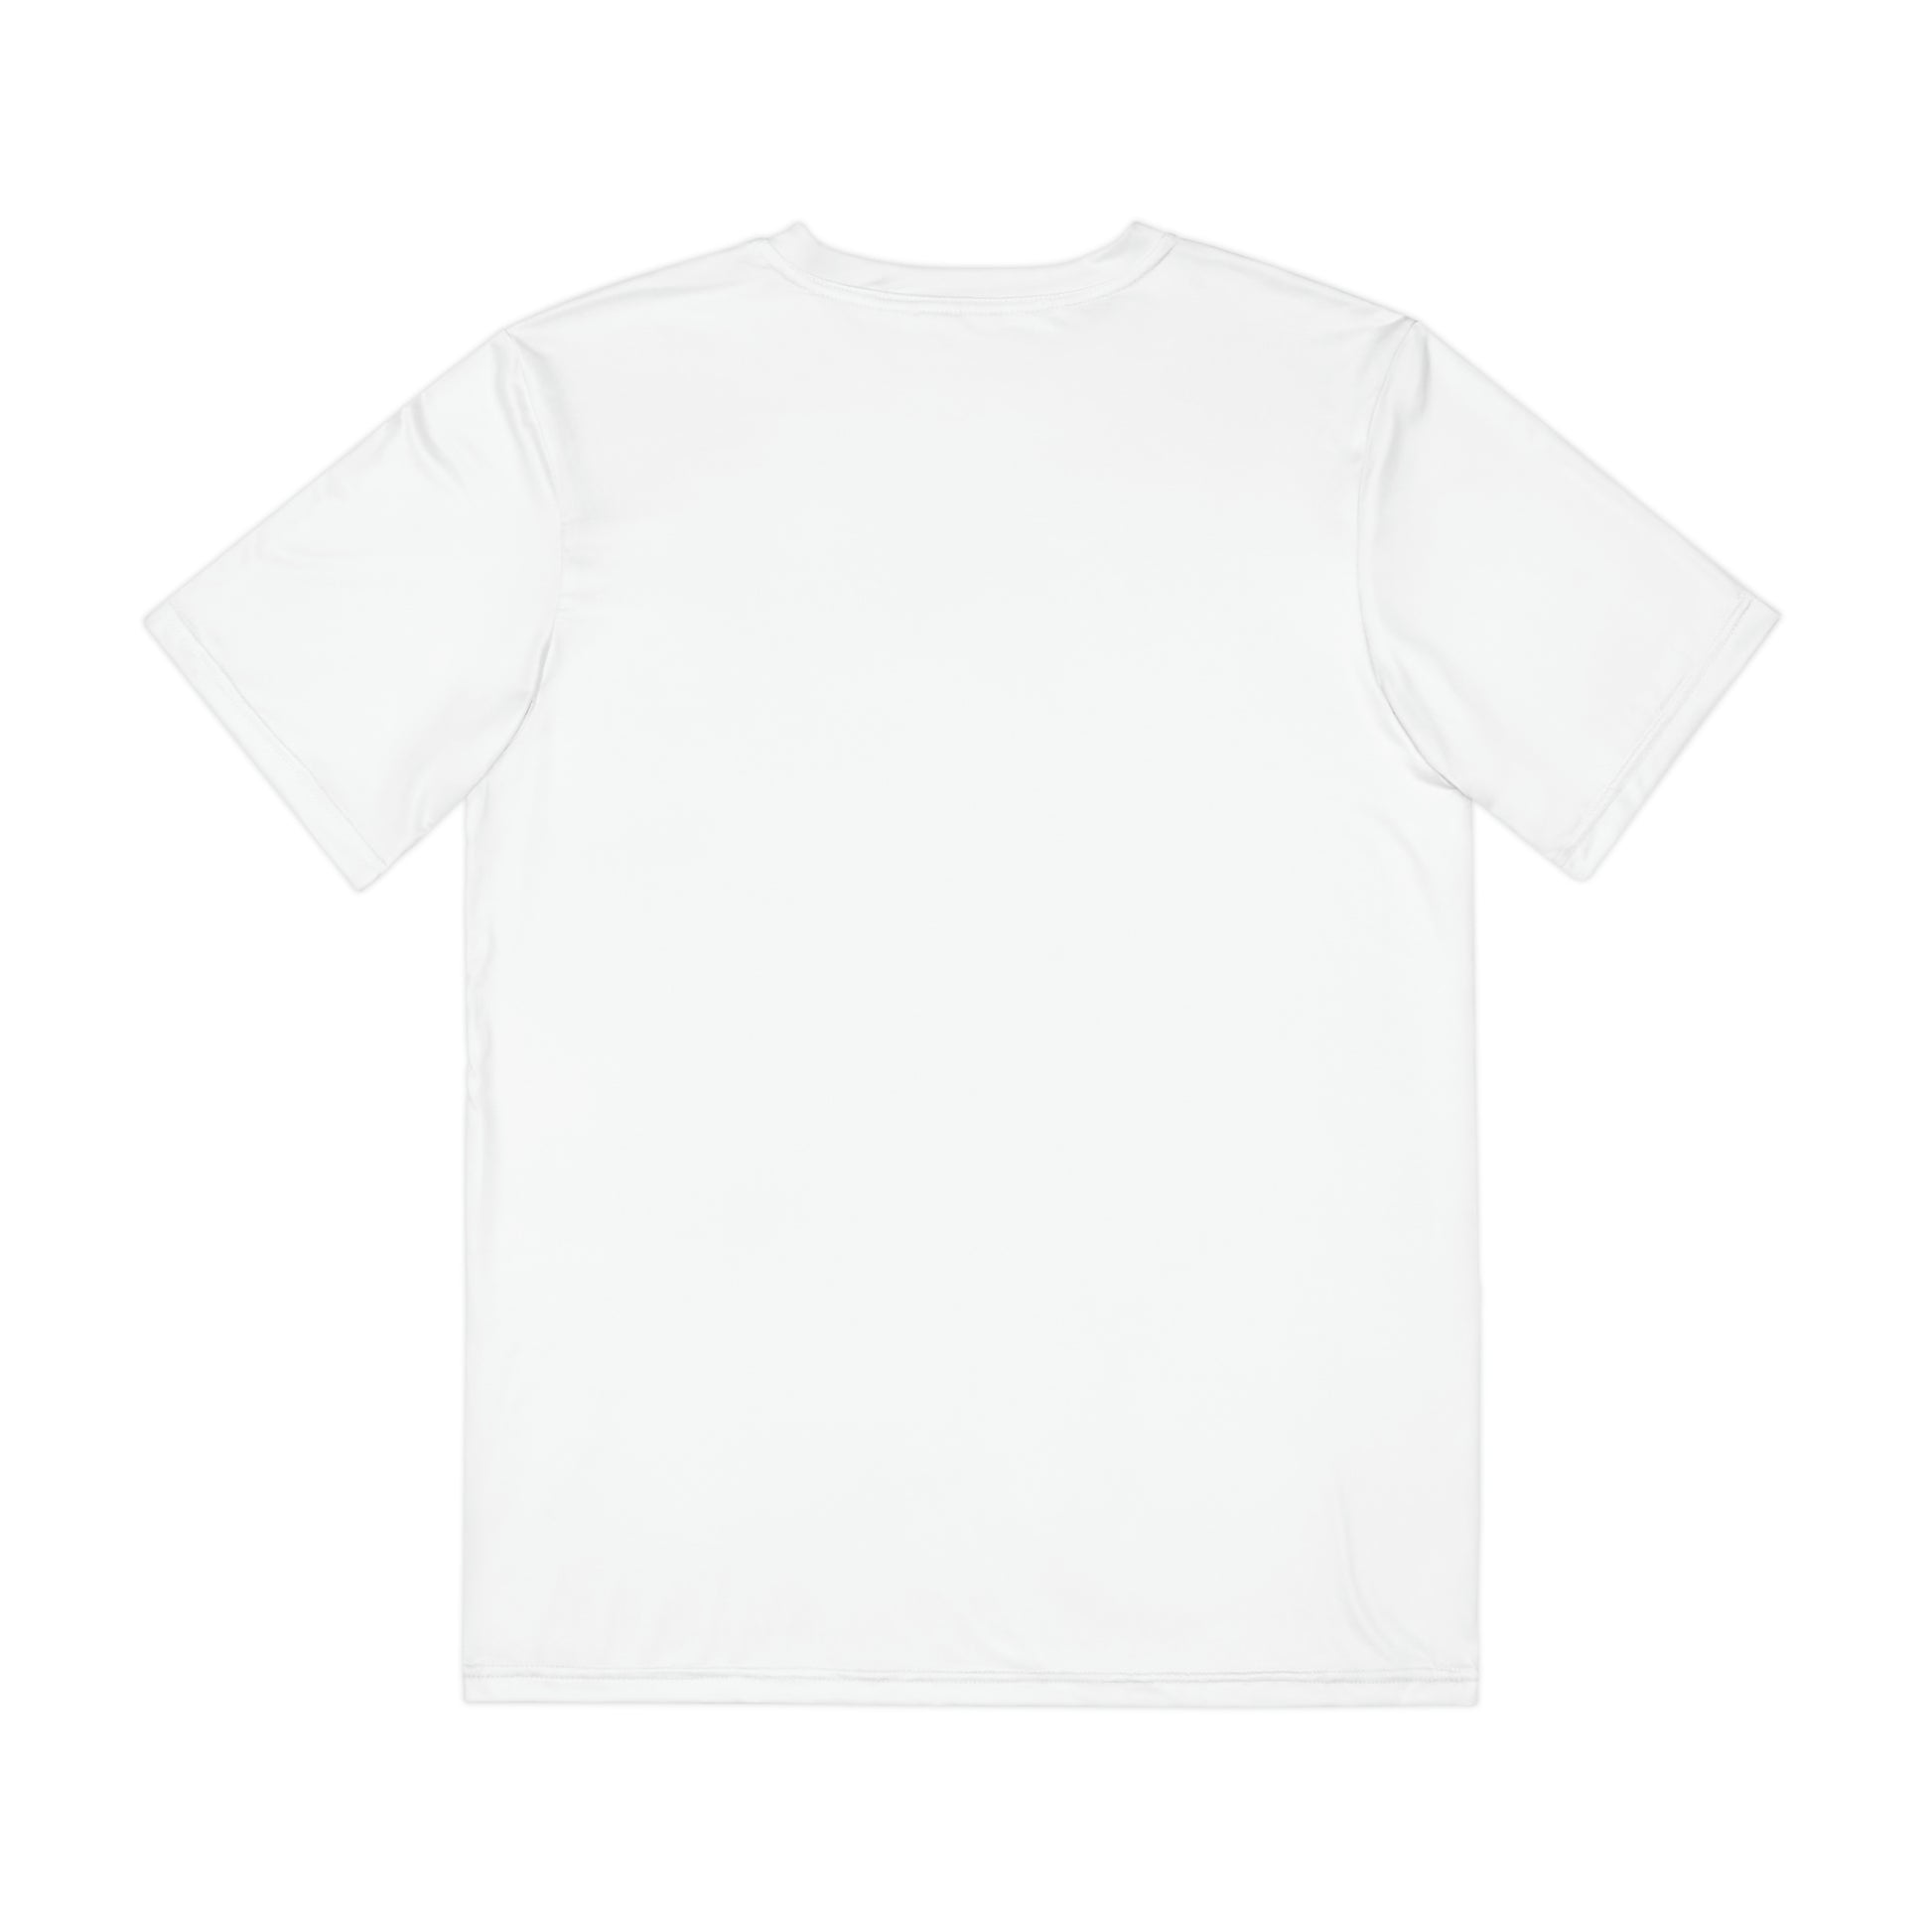 Men's T-shirt - Official primitive store